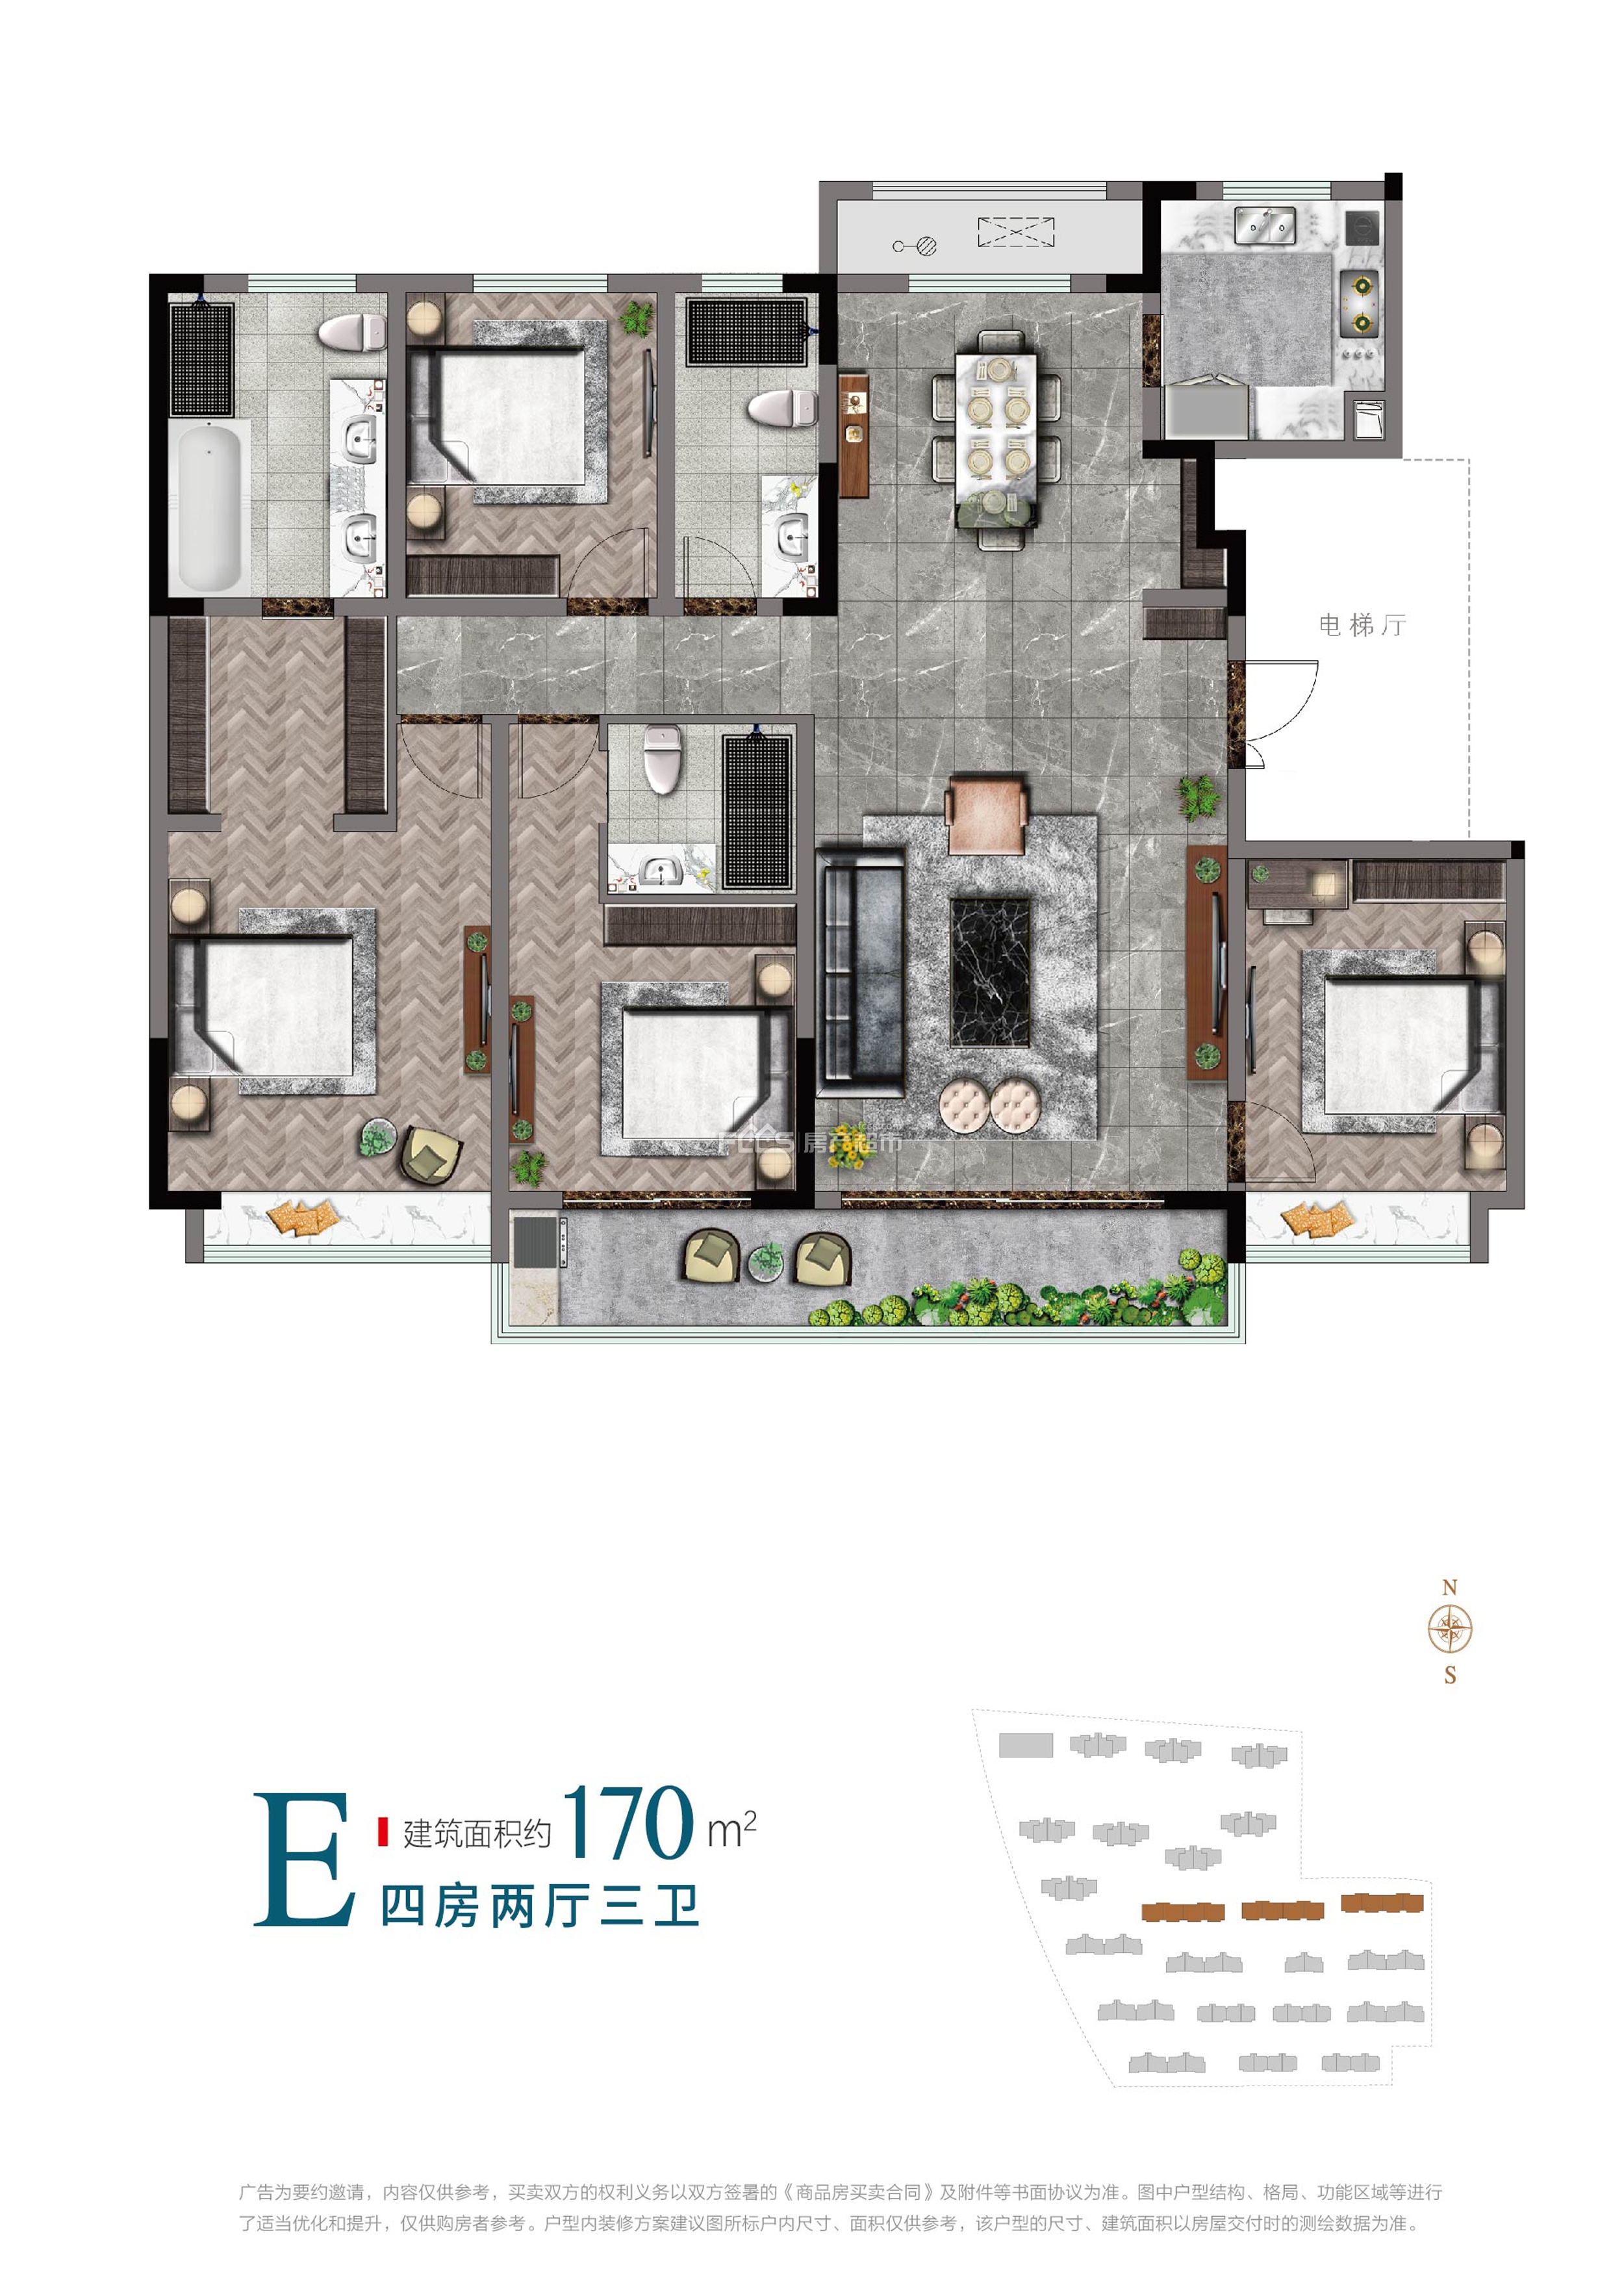 宝龙世家e户型户型170平米4室2厅3卫户型图,户型设计